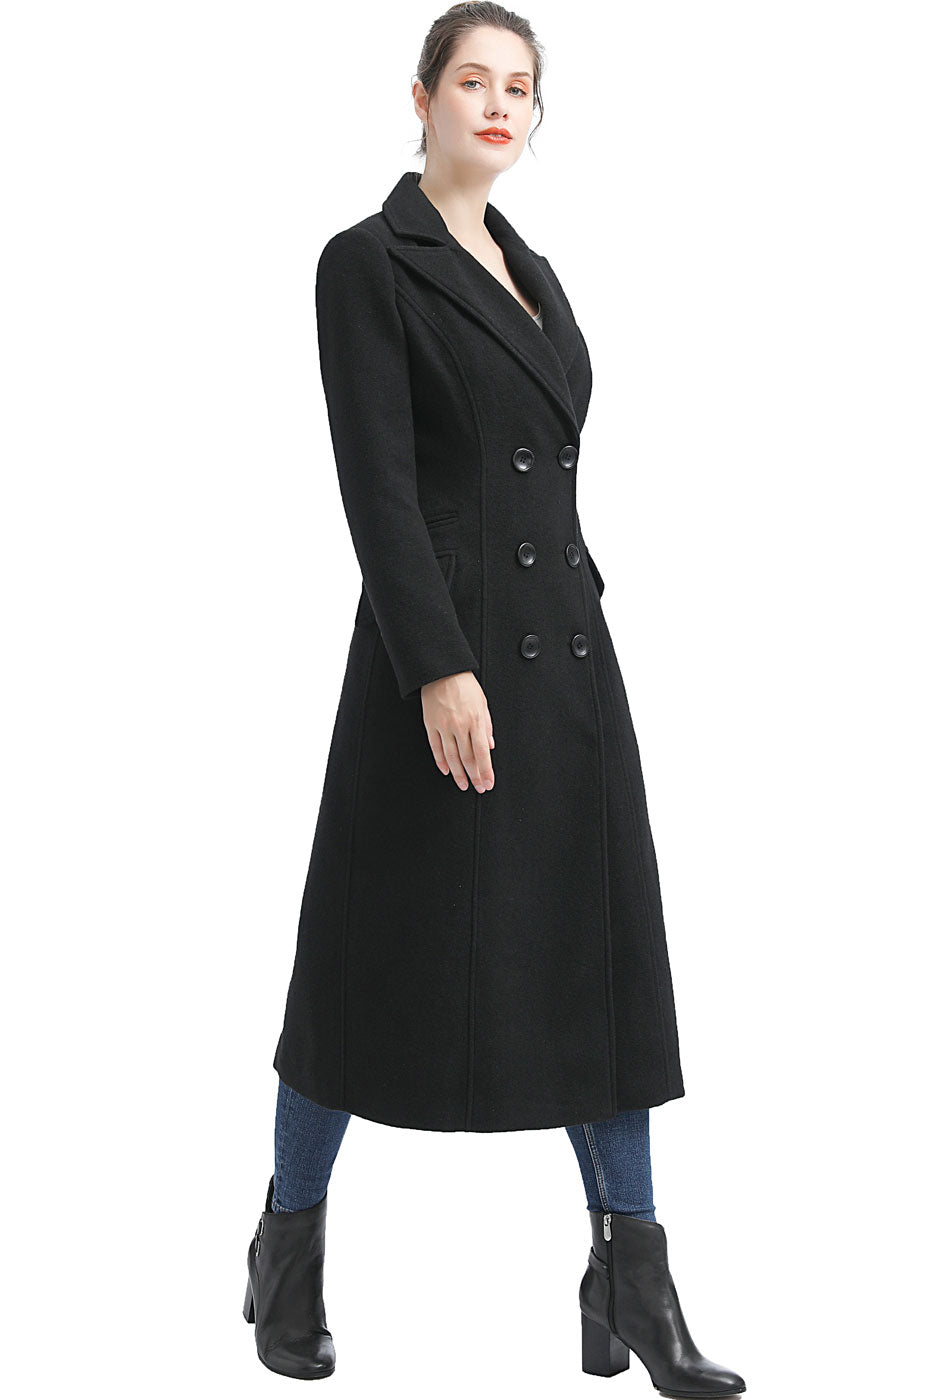 BGSD Women Fay Full Length Long Wool Pea Coat